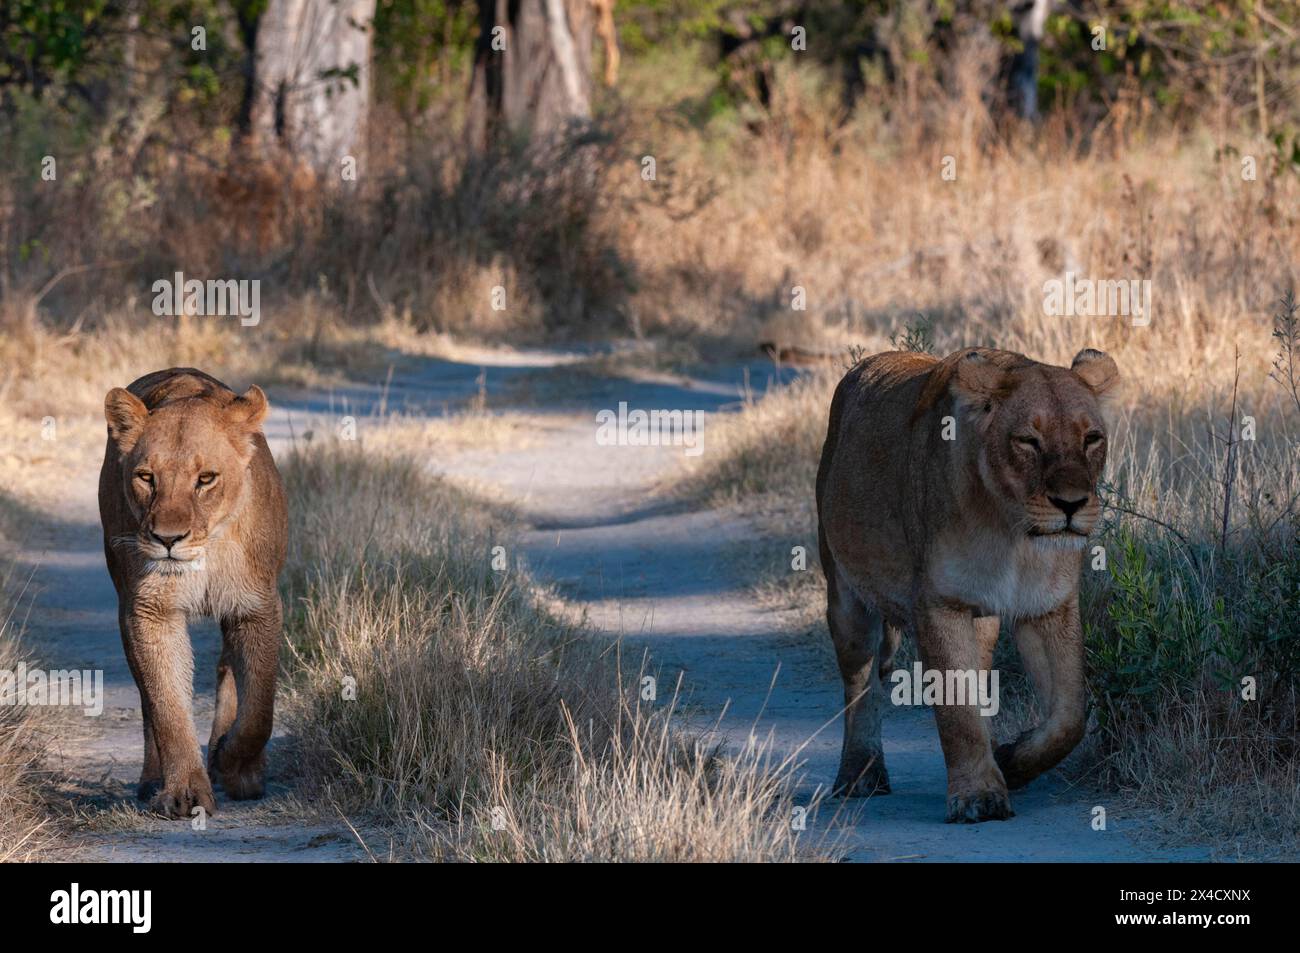 Une paire de lions femelles, Panthera leo, marchant sur une route de terre.Île Chief, réserve de gibier de Moremi, delta d'Okavango, Botswana. Banque D'Images